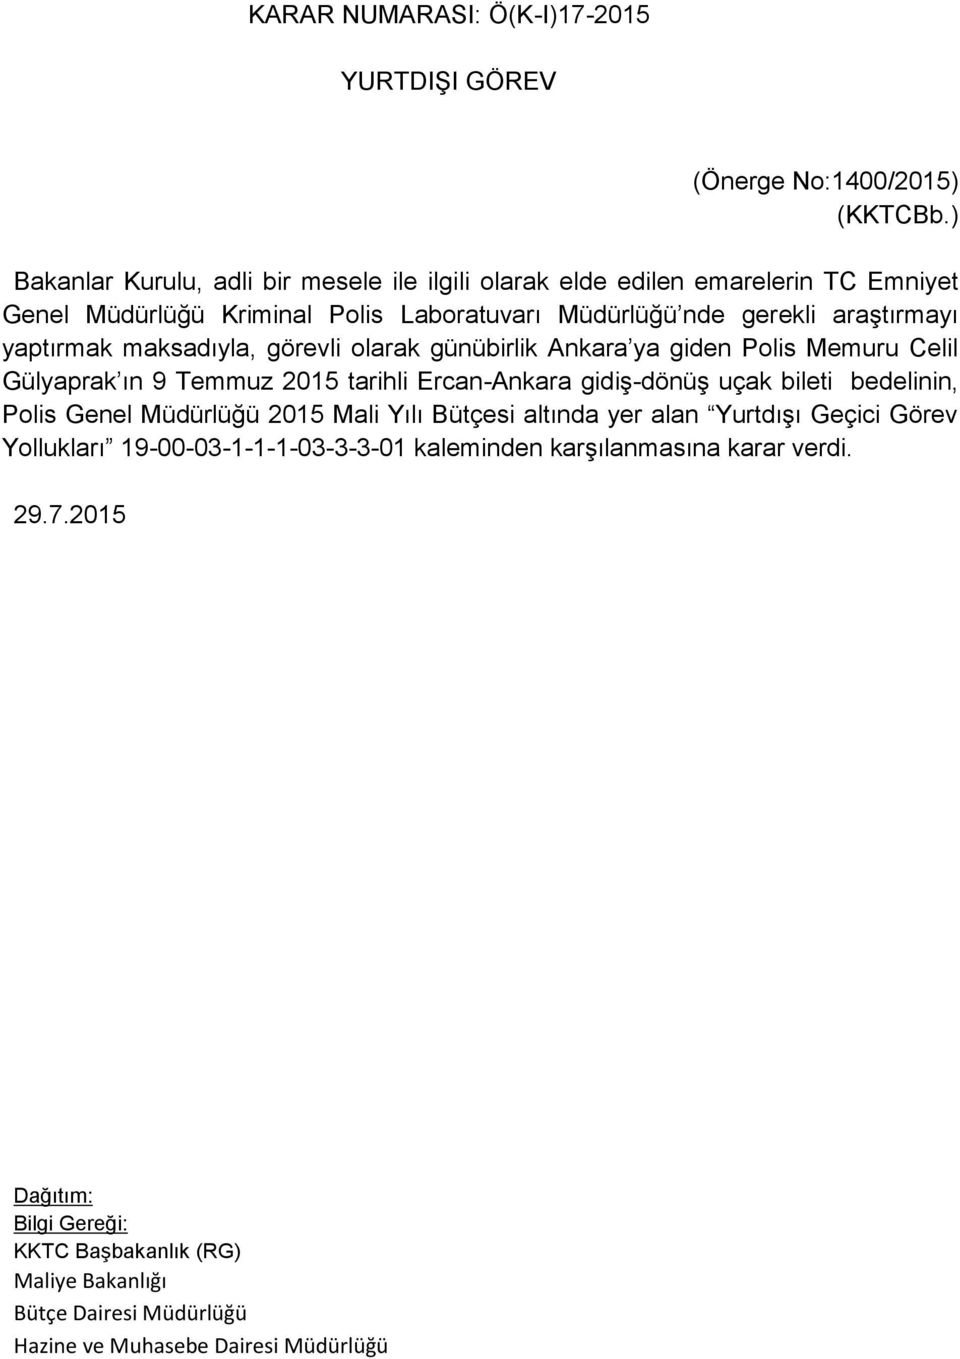 araştırmayı yaptırmak maksadıyla, görevli olarak günübirlik Ankara ya giden Polis Memuru Celil Gülyaprak ın 9 Temmuz 2015 tarihli Ercan-Ankara gidiş-dönüş uçak